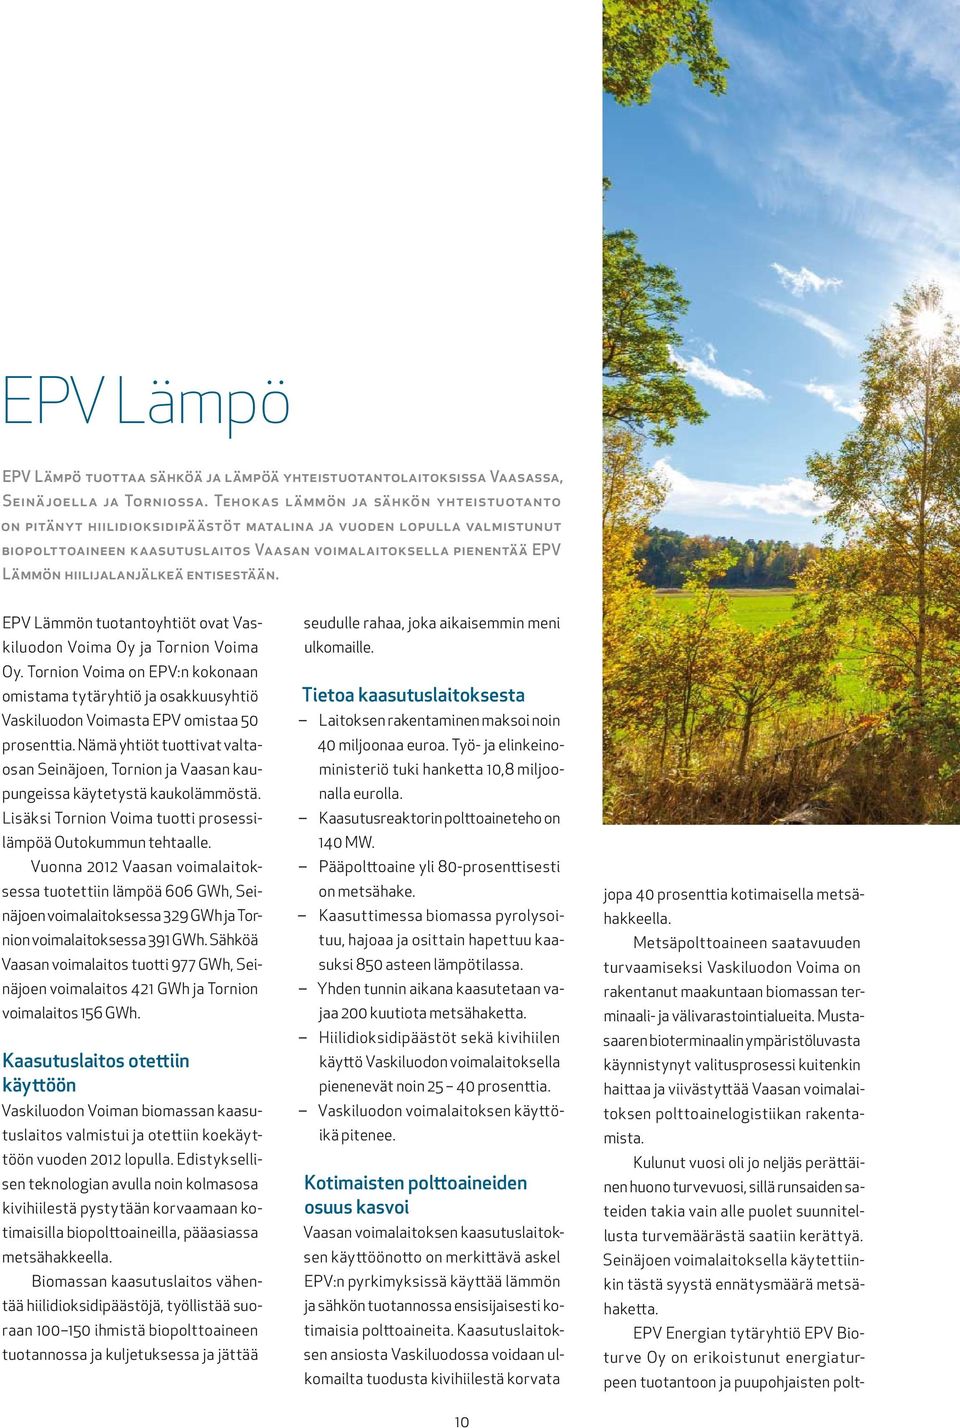 hiilijalanjälkeä entisestään. EPV Lämmön tuotantoyhtiöt ovat Vaskiluodon Voima Oy ja Tornion Voima Oy.